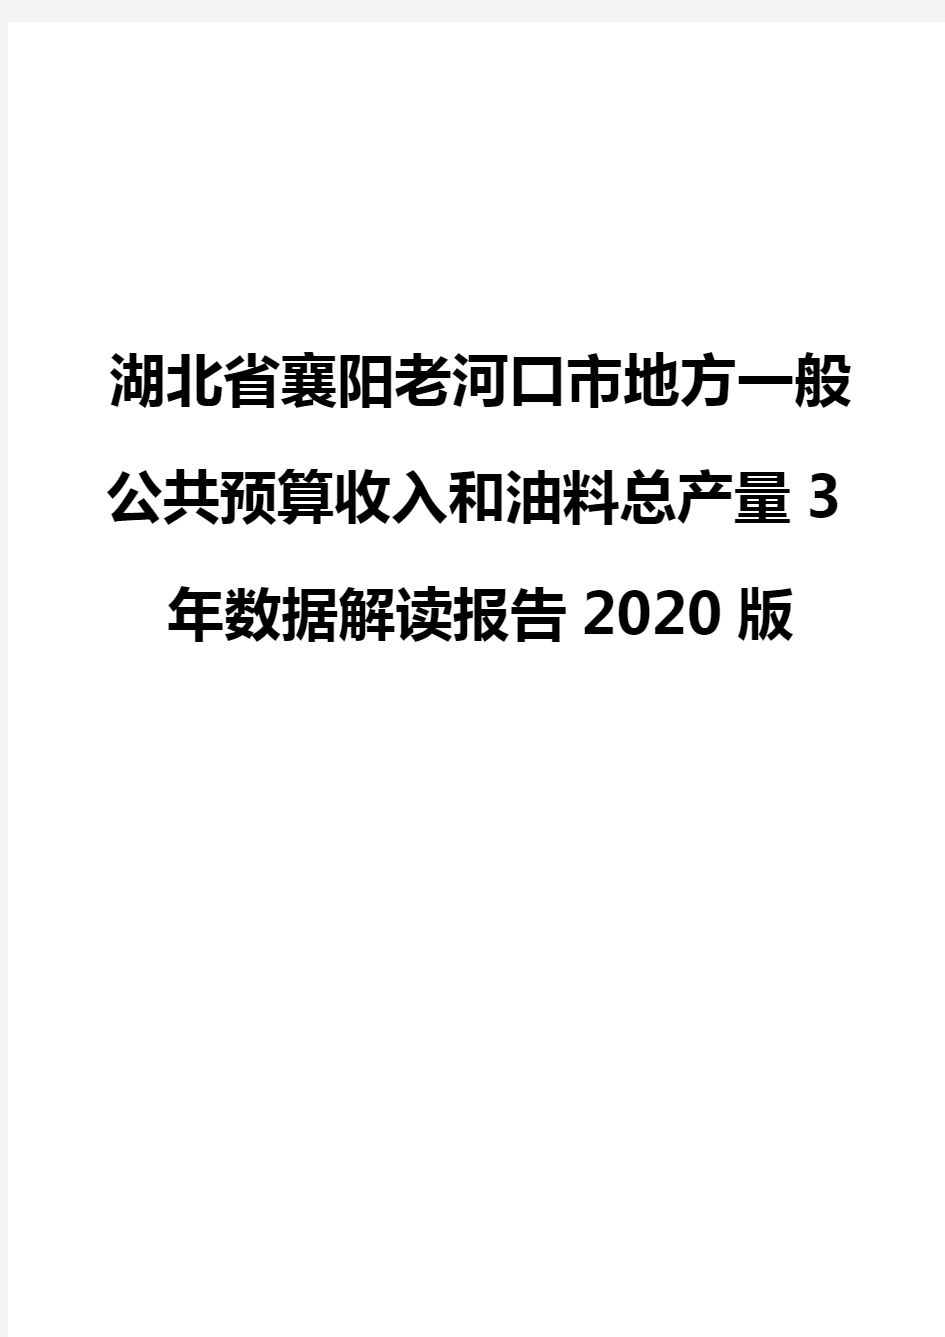 湖北省襄阳老河口市地方一般公共预算收入和油料总产量3年数据解读报告2020版